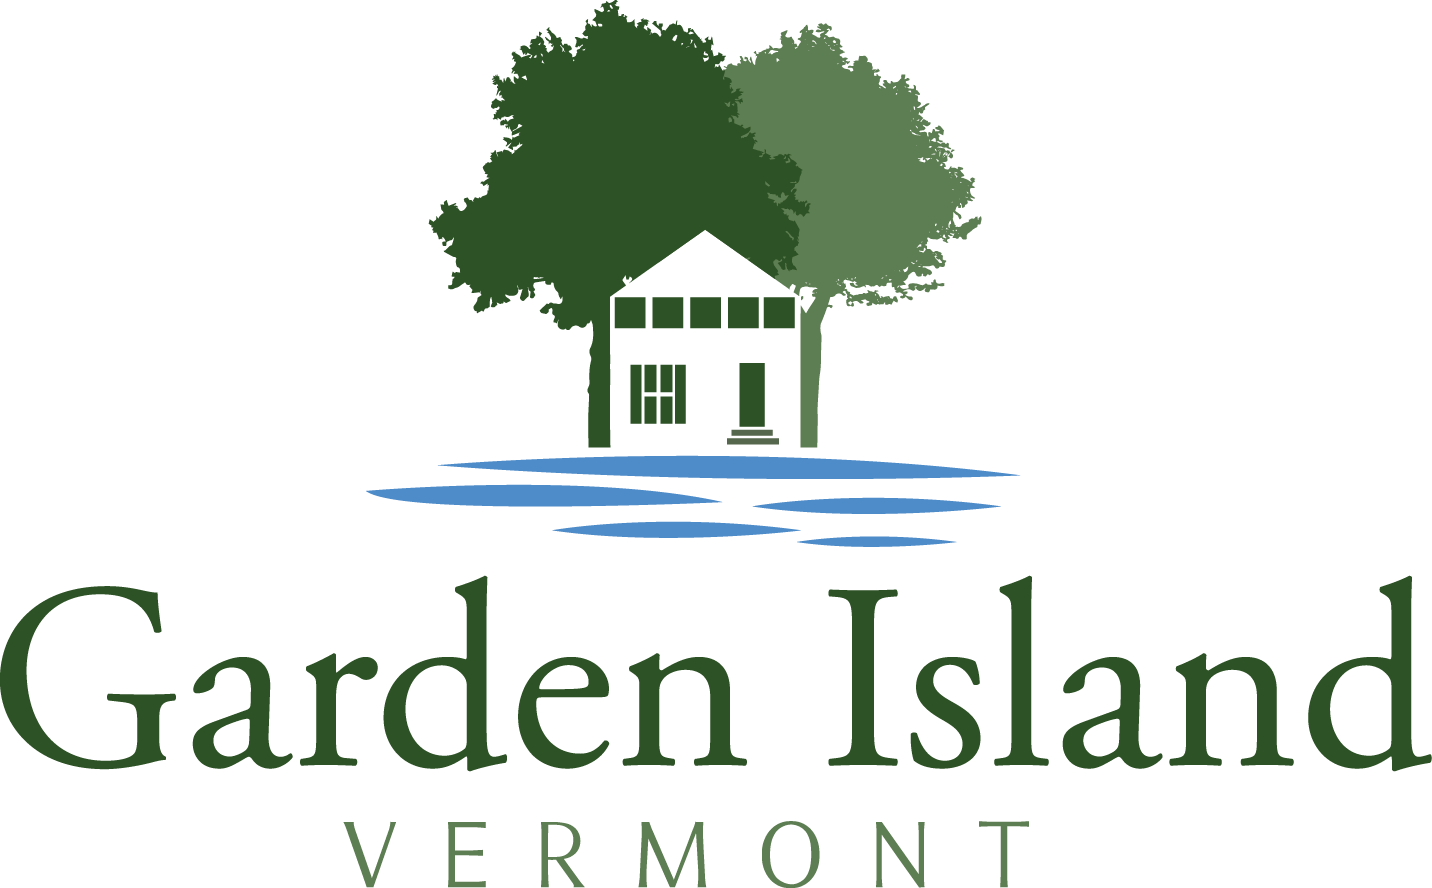 Garden Island Vermont